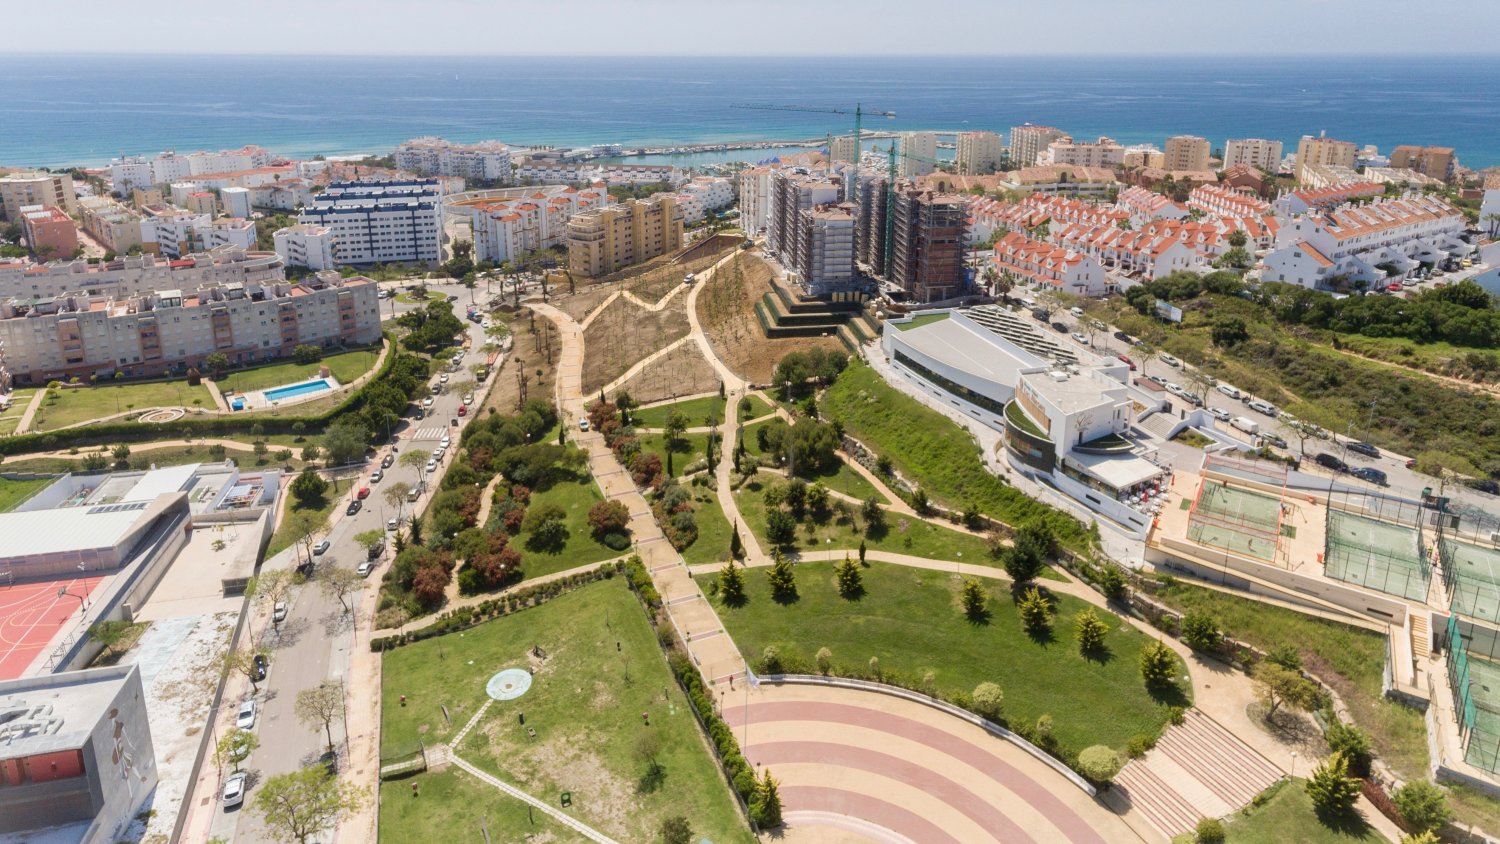 El Ayuntamiento de Estepona concluye las obras de ampliación del Parque de Los Niños, que cuenta con un tobogán urbano de 38 metros